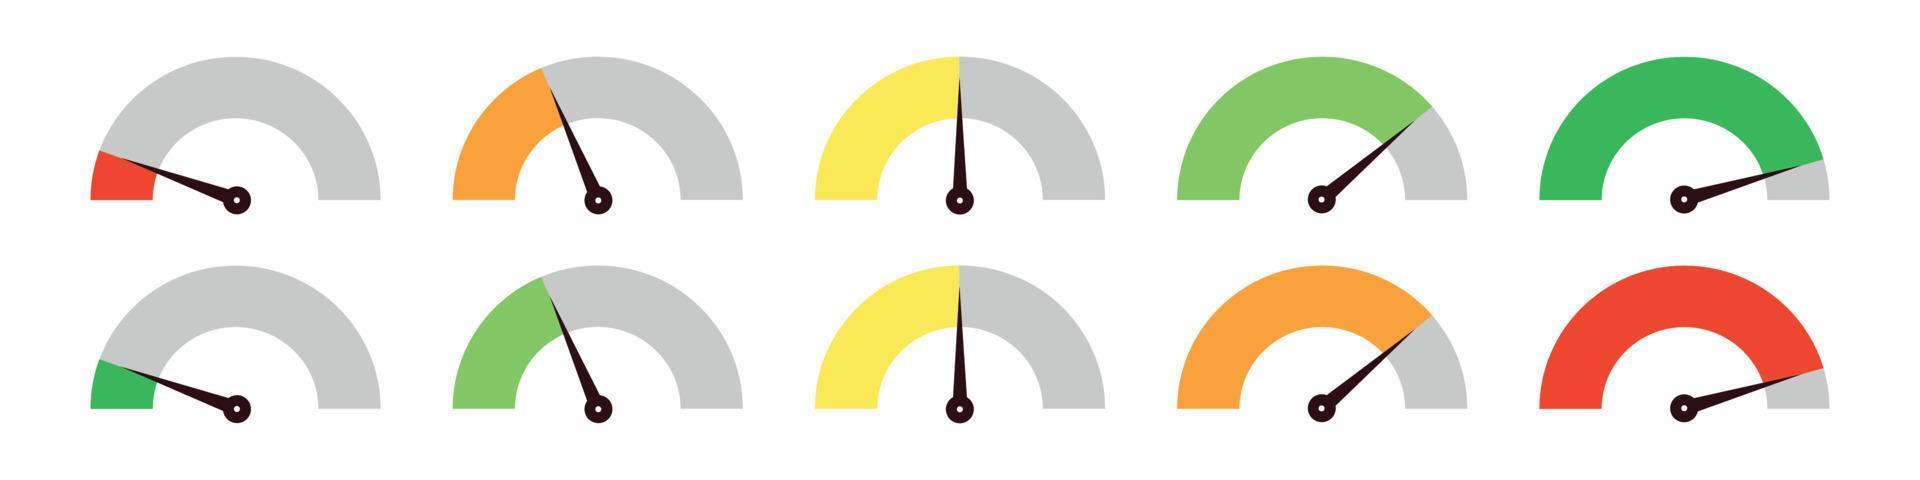 ensemble de compteurs de vitesse colorés différents, élément de jauge de compteur, cotes de divers degrés de satisfaction. collection d'indicateurs de niveau. illustration vectorielle isolée vecteur